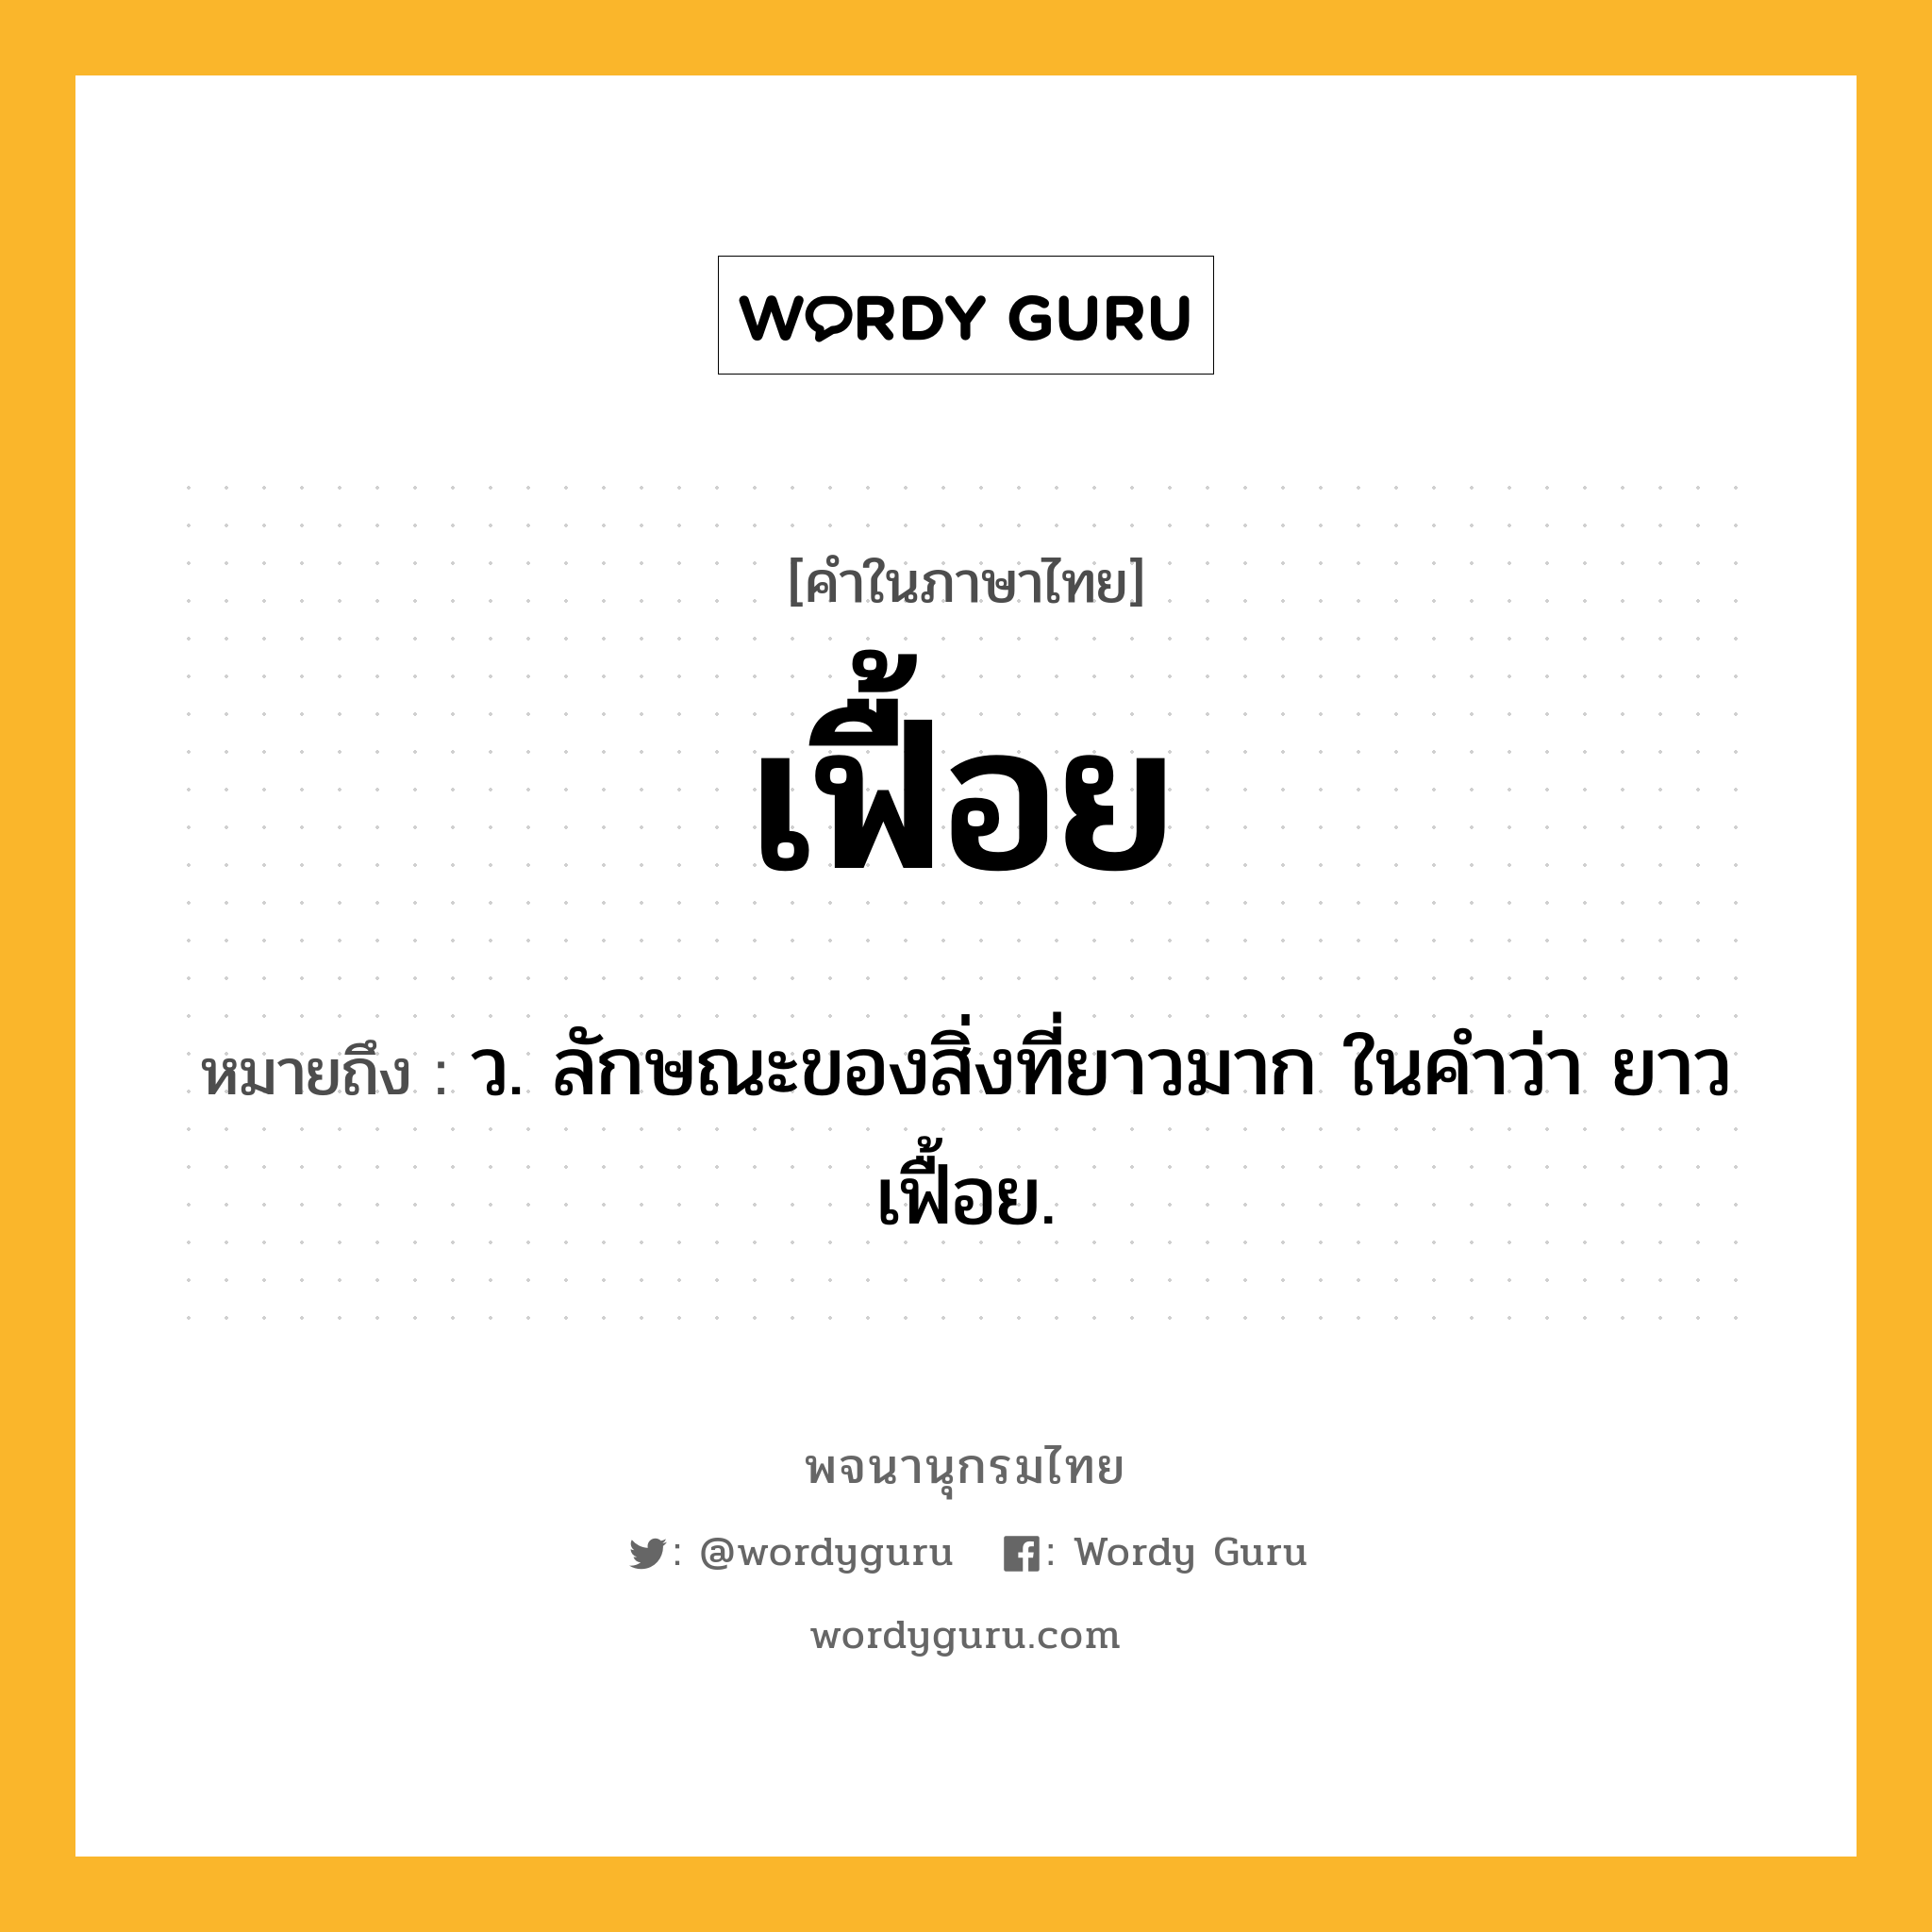 เฟื้อย ความหมาย หมายถึงอะไร?, คำในภาษาไทย เฟื้อย หมายถึง ว. ลักษณะของสิ่งที่ยาวมาก ในคำว่า ยาวเฟื้อย.